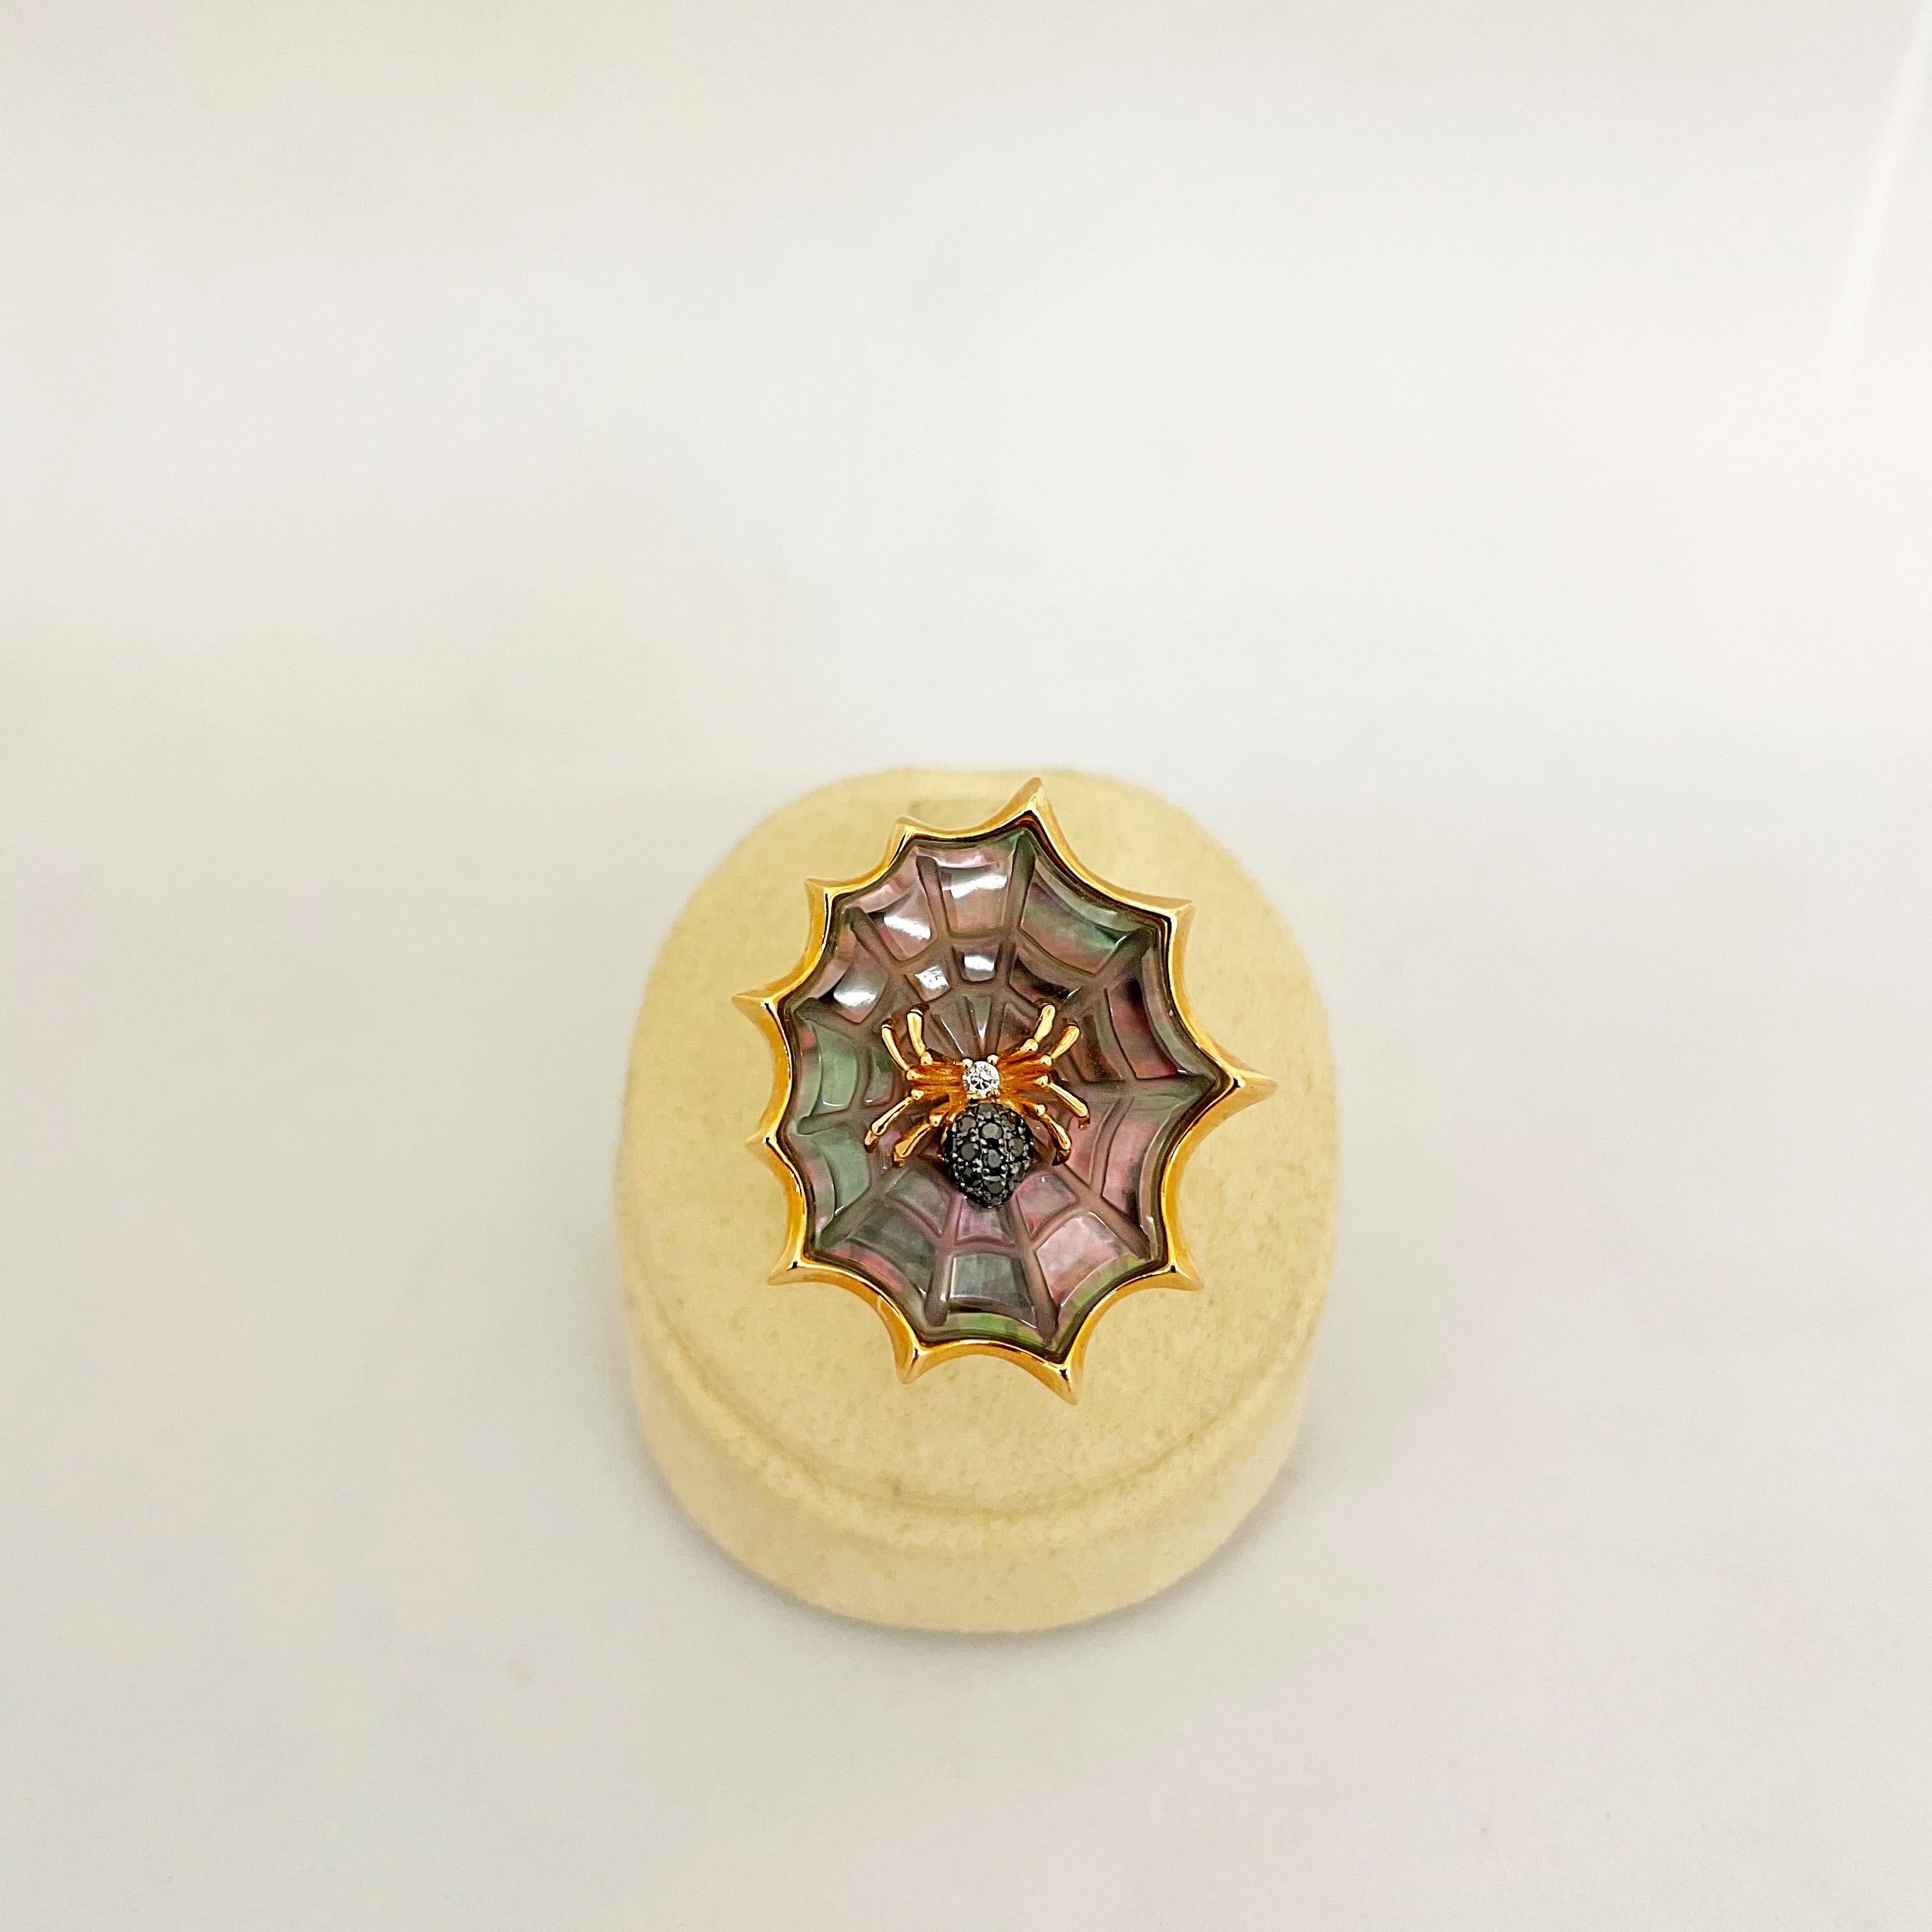 Cette bague unique en or rose 18 carats est conçue comme une araignée assise sur sa toile. L'araignée en or rose est sertie de 0,05 carats de diamants noirs et de 0,02 carats de diamants blancs. La toile magnifiquement détaillée est sculptée à la